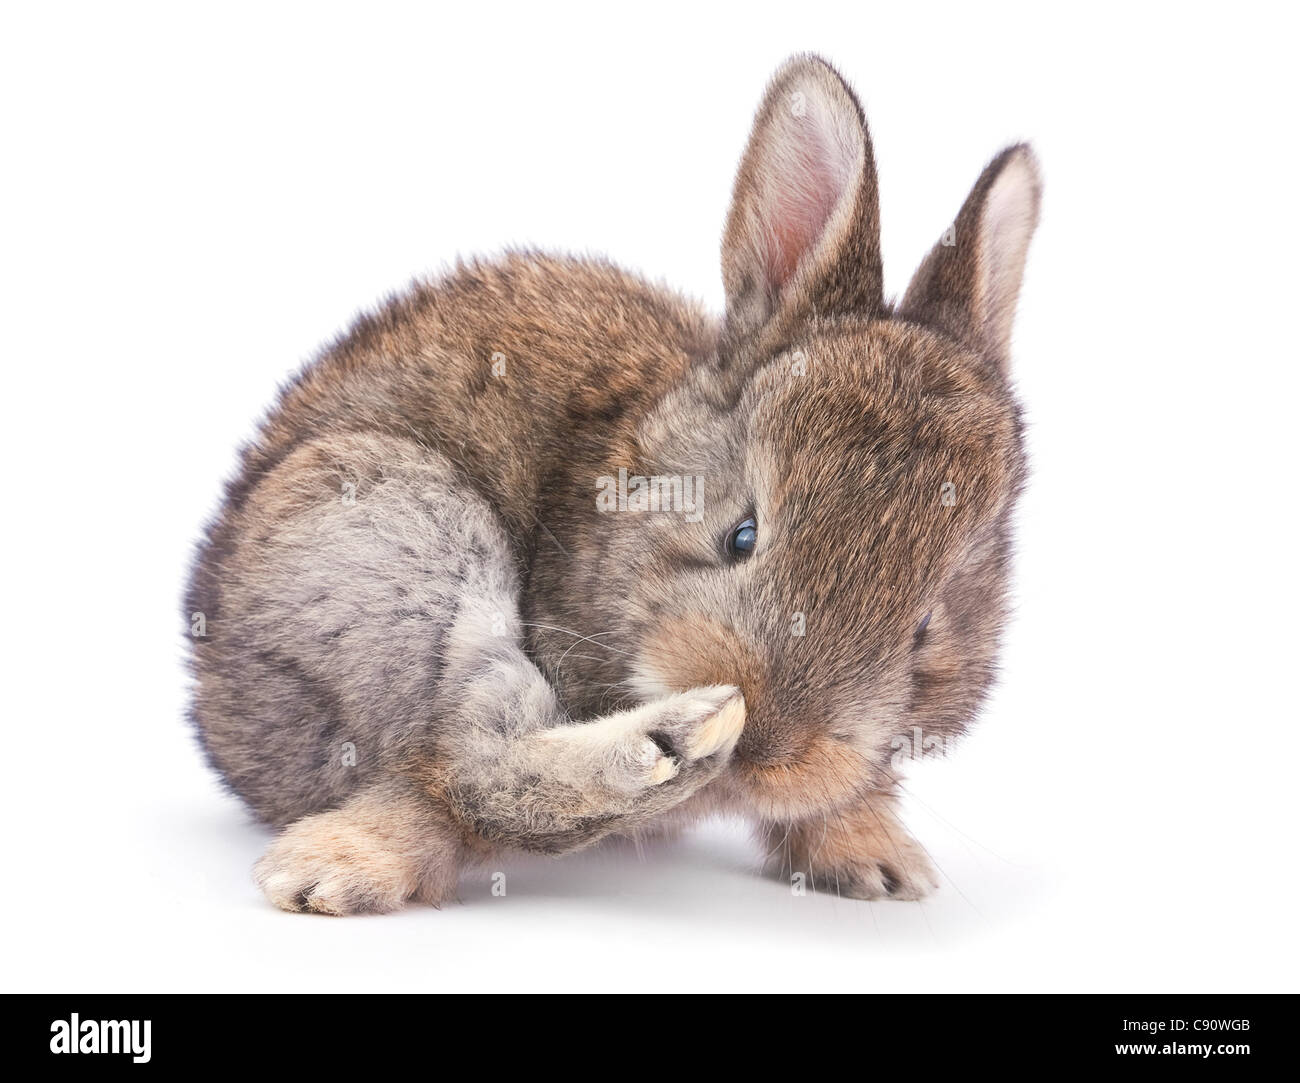 Baby Kaninchen Bauernhof Tier Closeup auf weißem Hintergrund Stockfoto